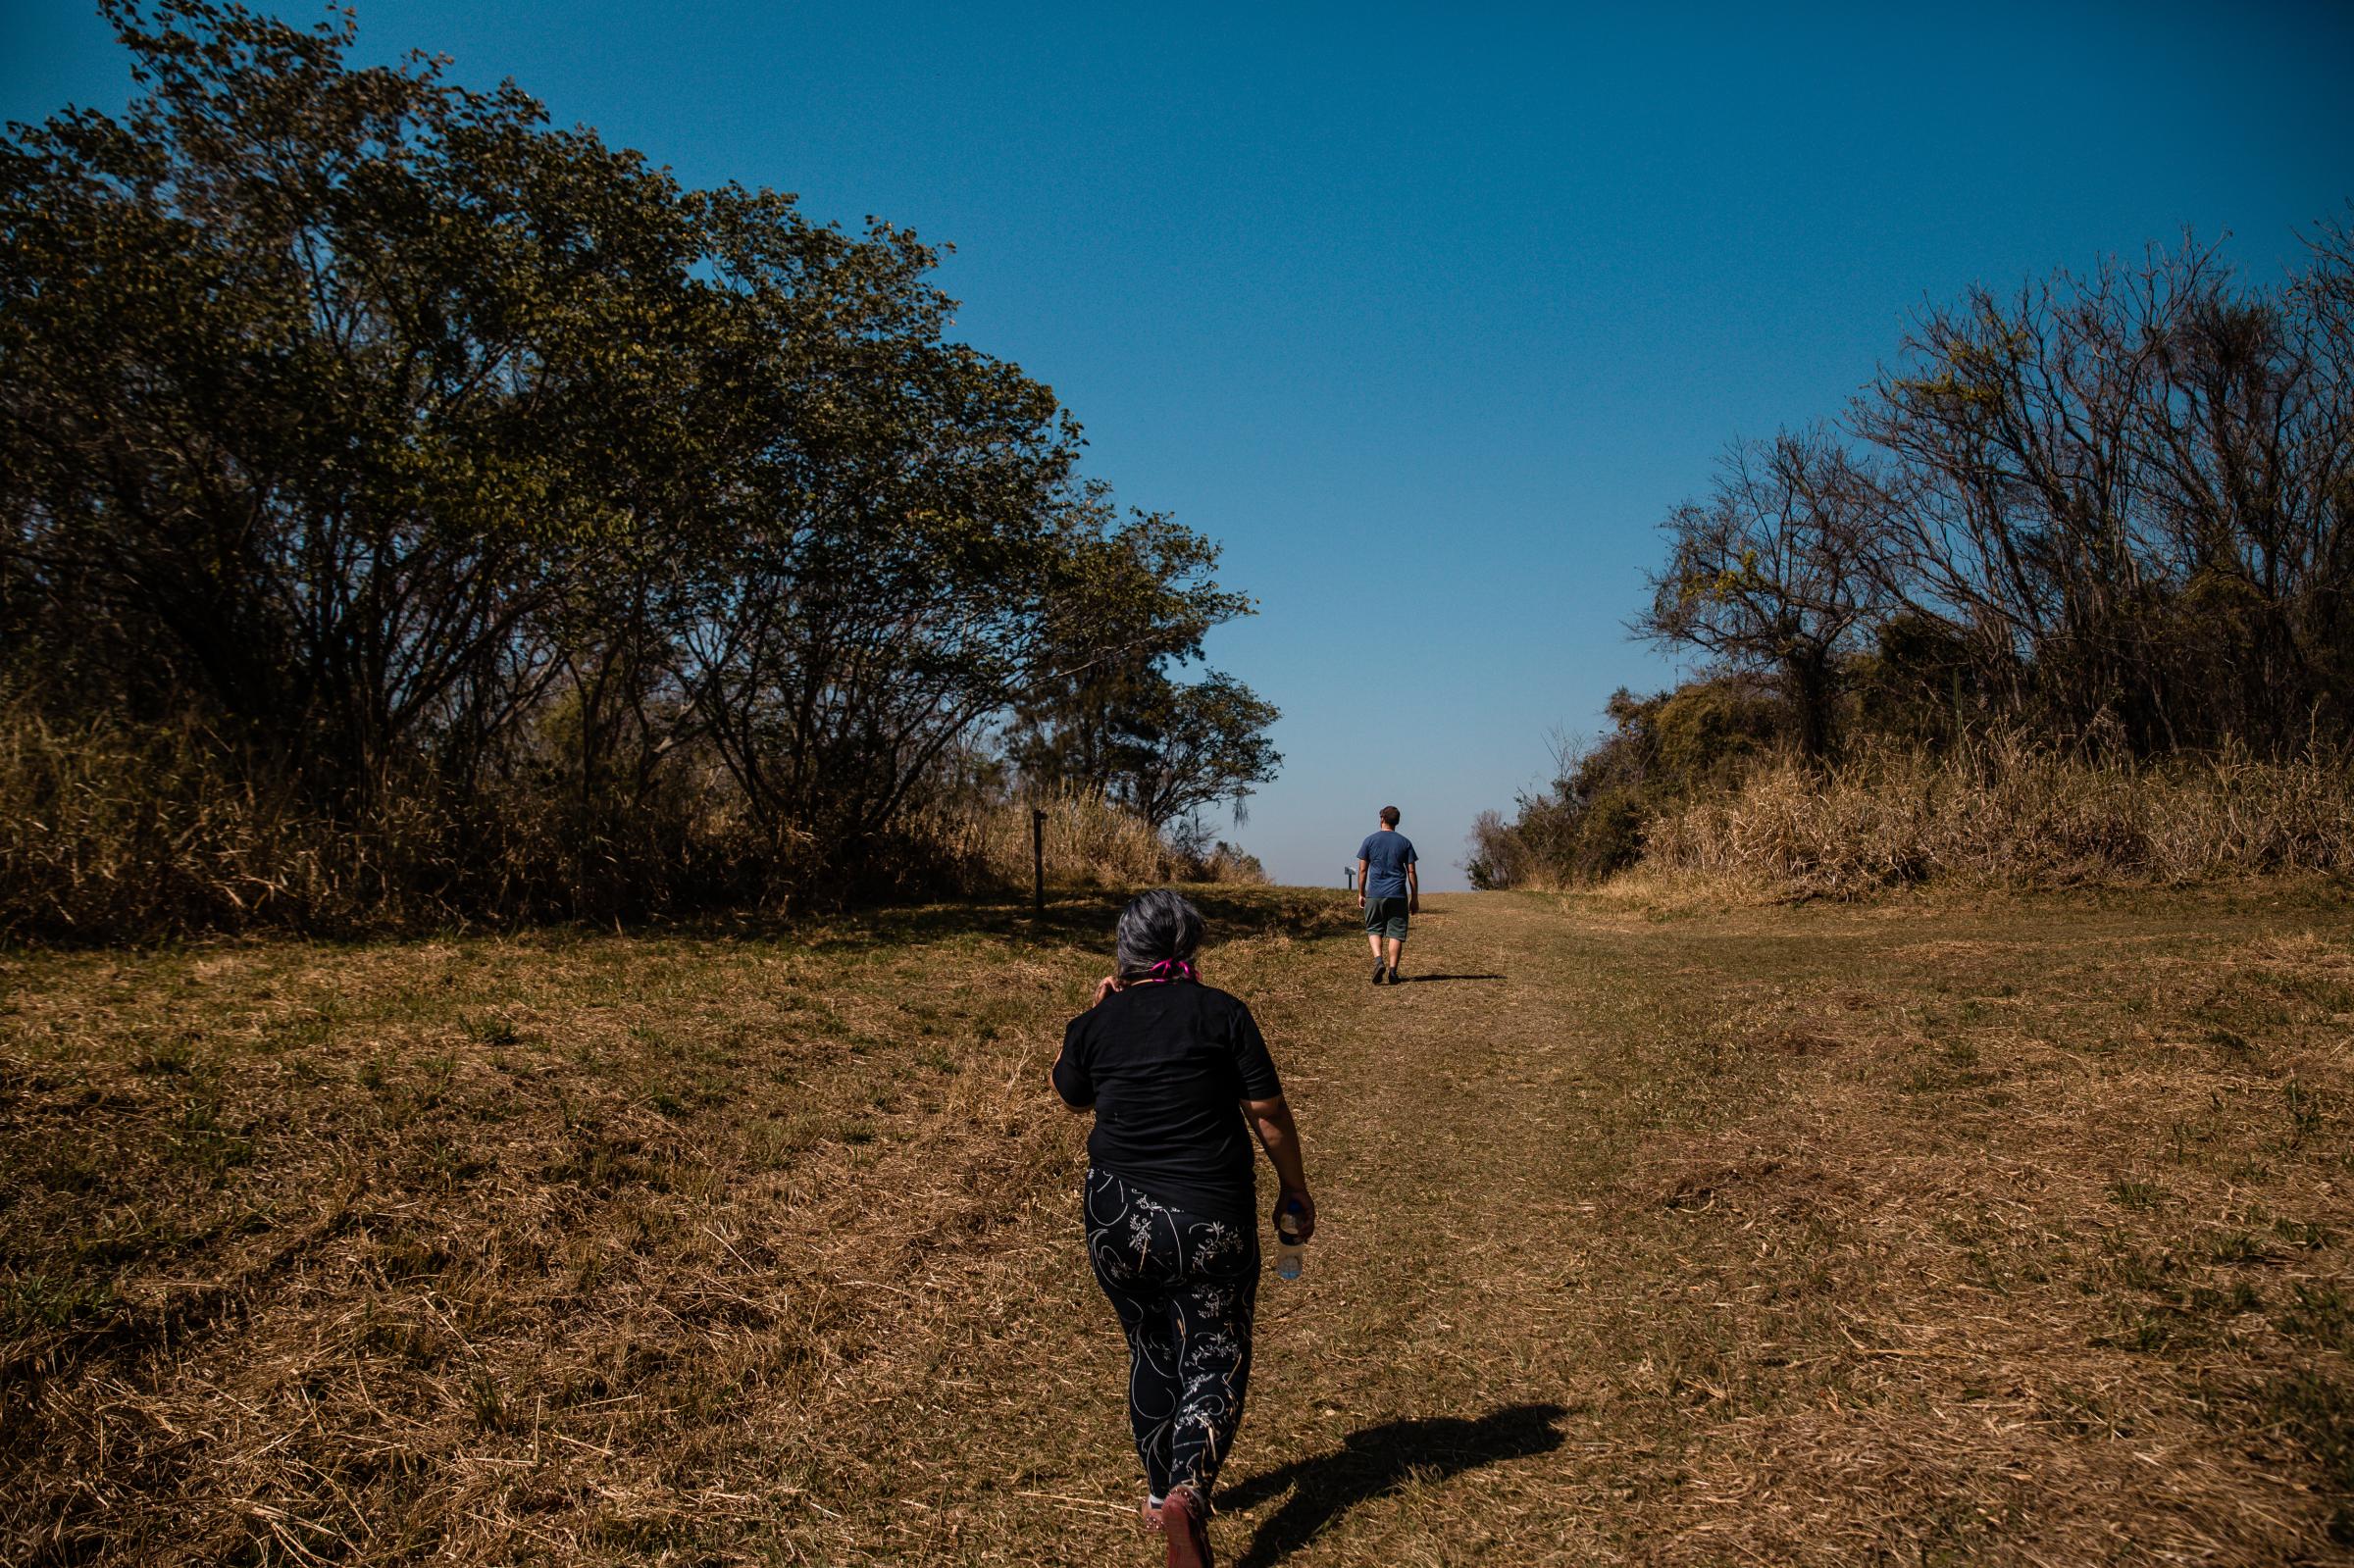 Morro de Ipanema - Two people walking on the open tracks of Ipanema...